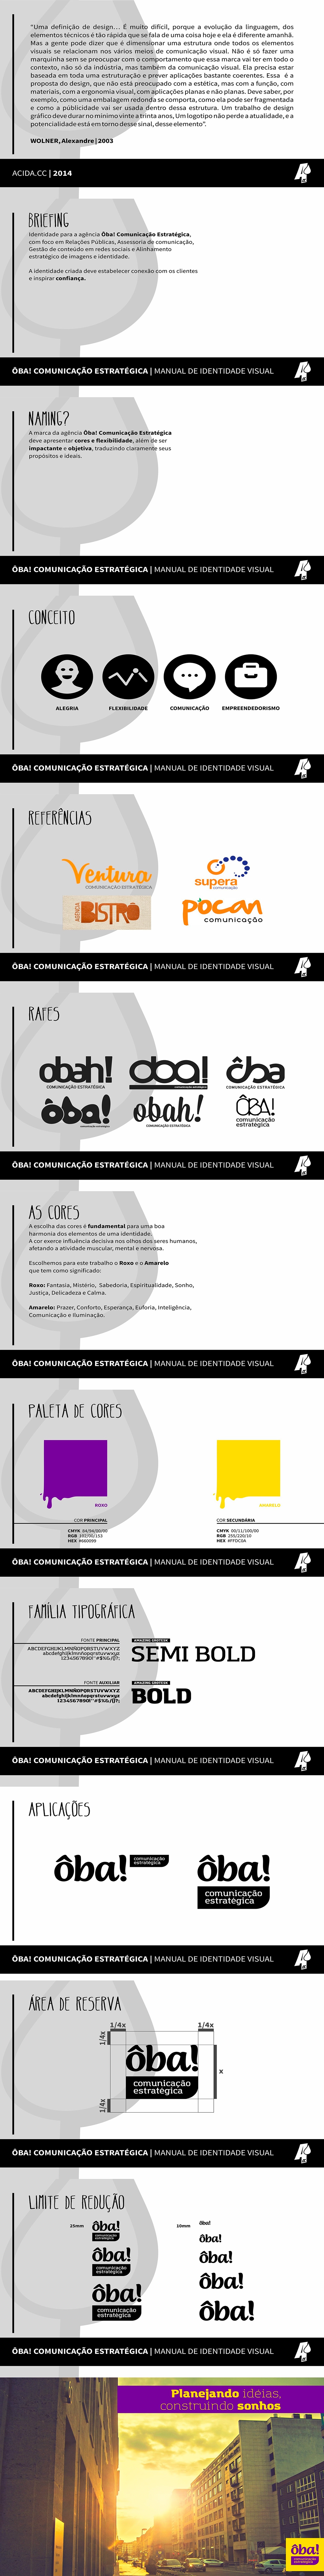 design diseño Brasil Brazil comunicação Criativa criatividade acida Estrategia estrategica